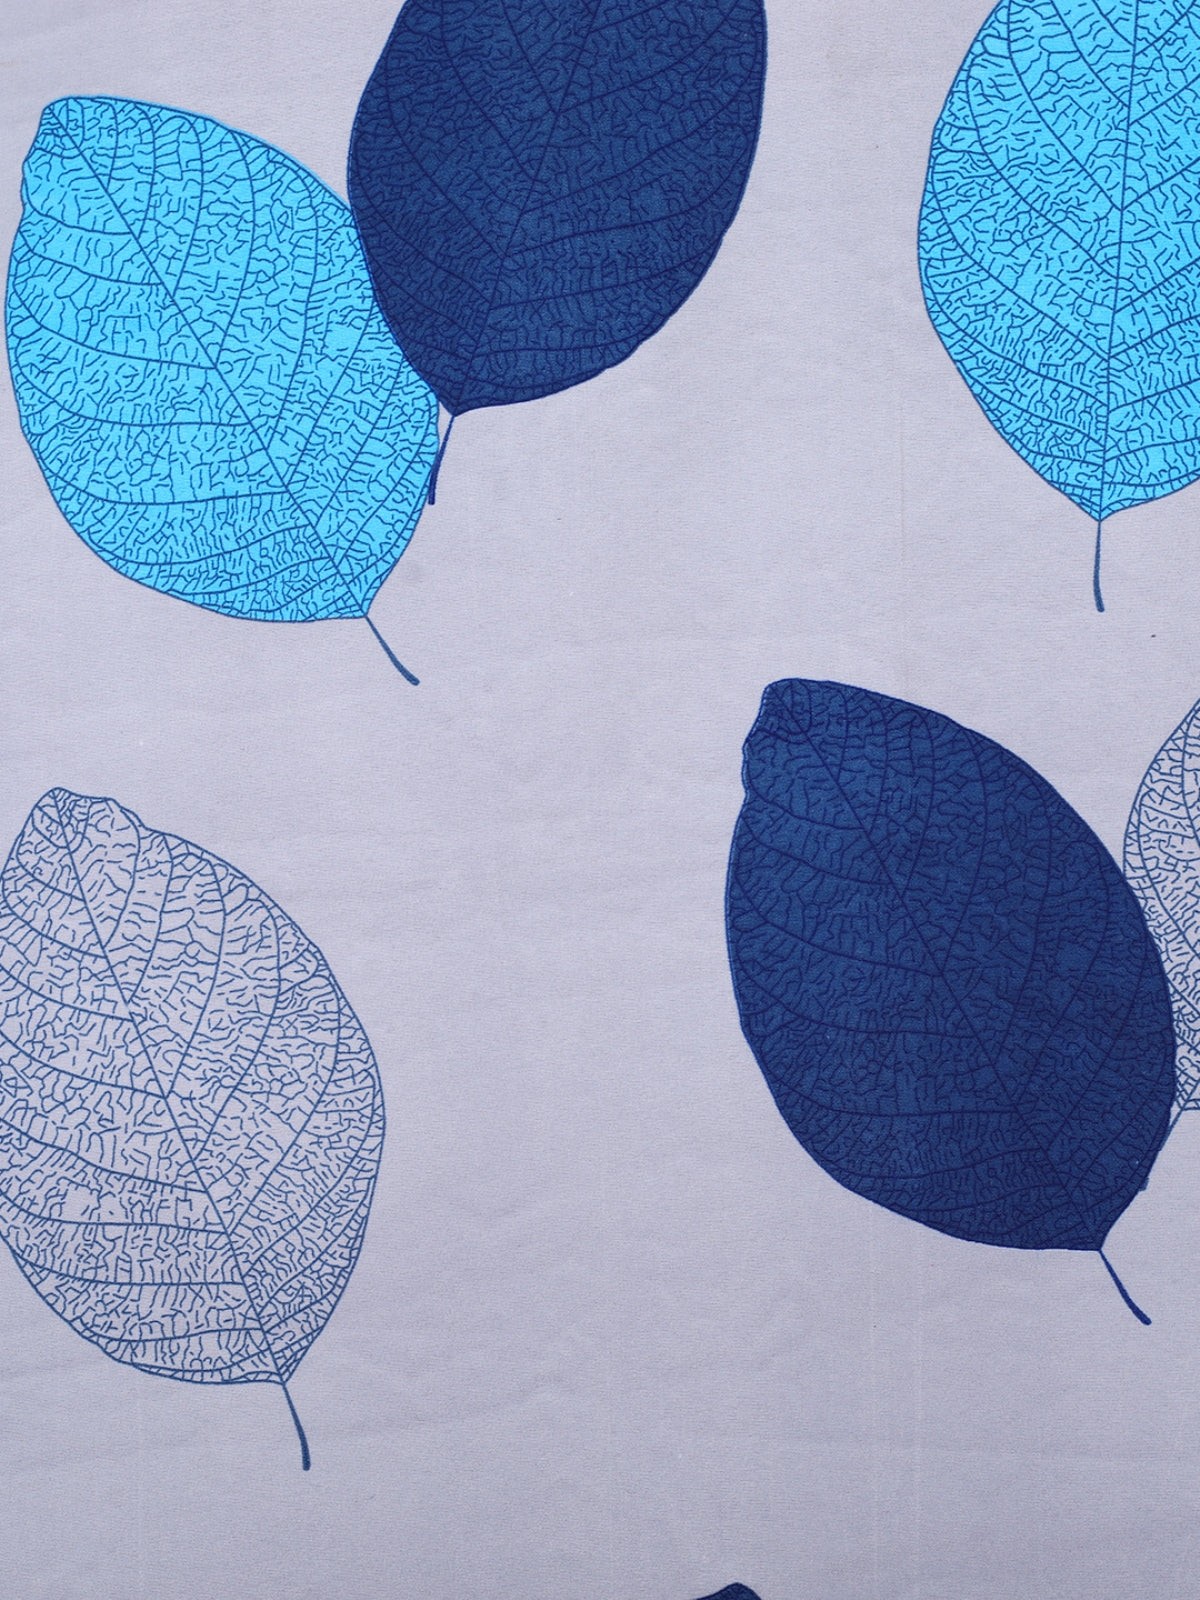 Grey & Blue Leaf Patterned King Size Cotton Bedding Set